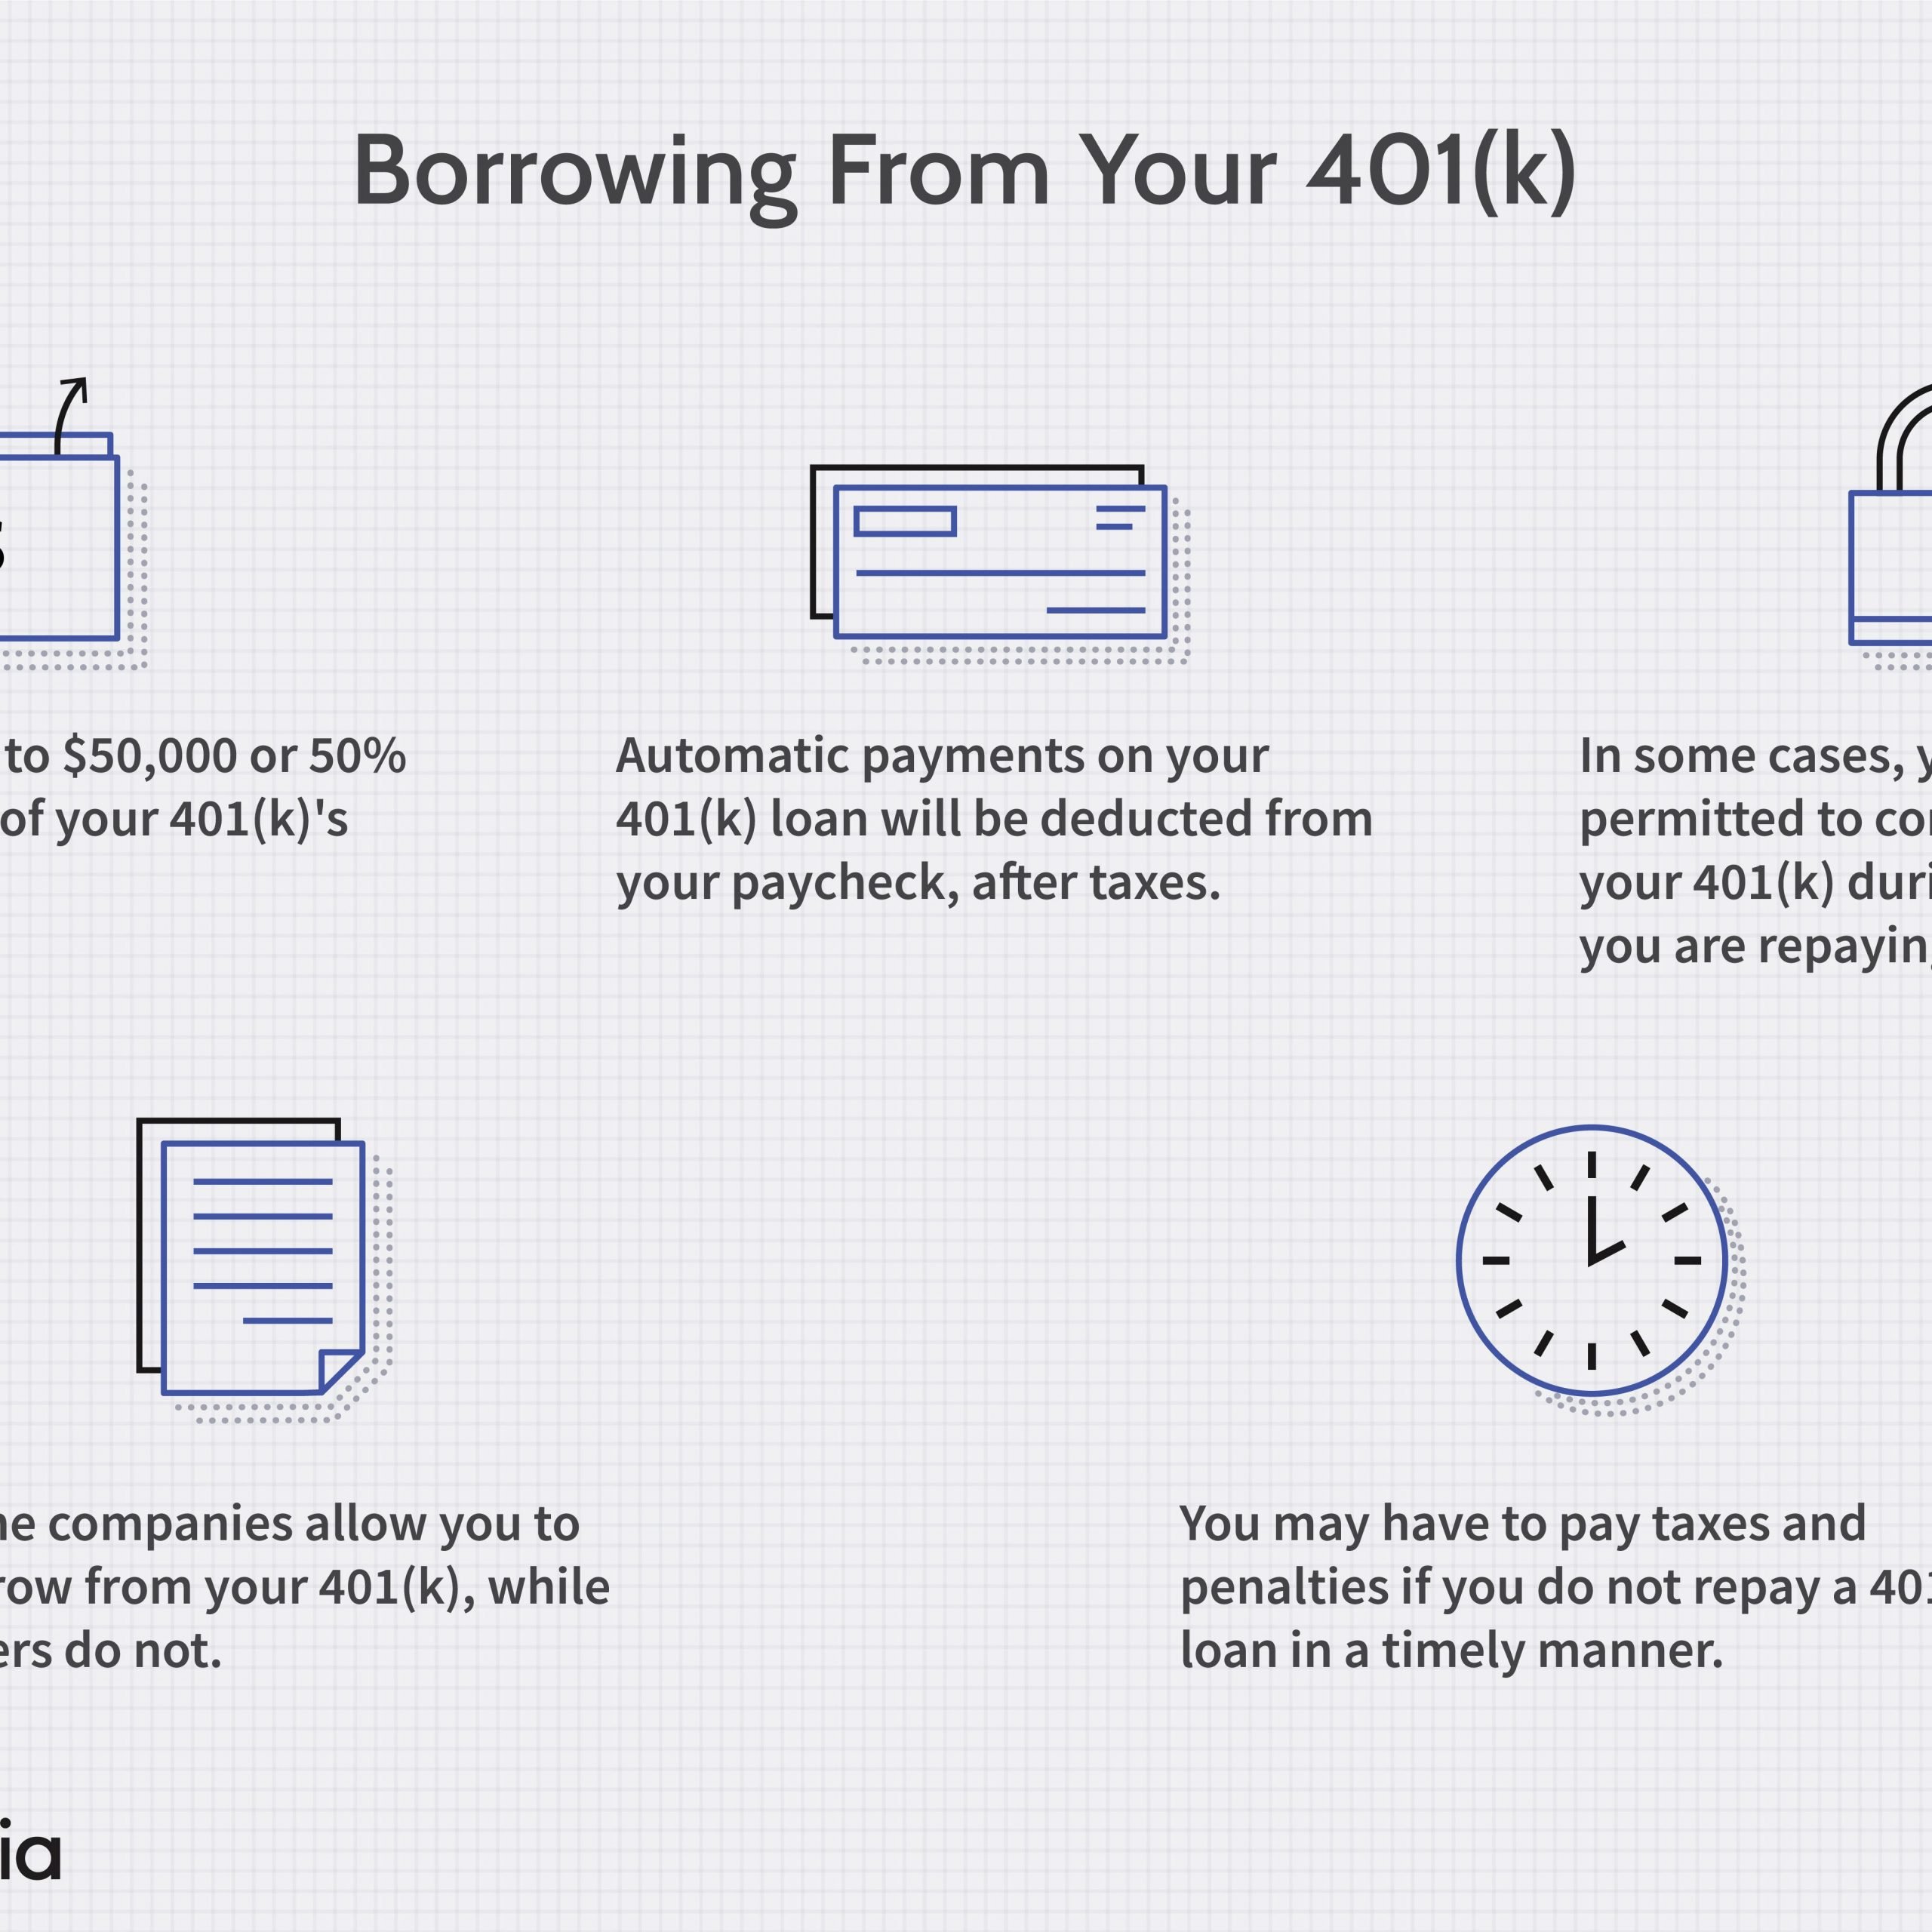 How To Borrow Against My 401k